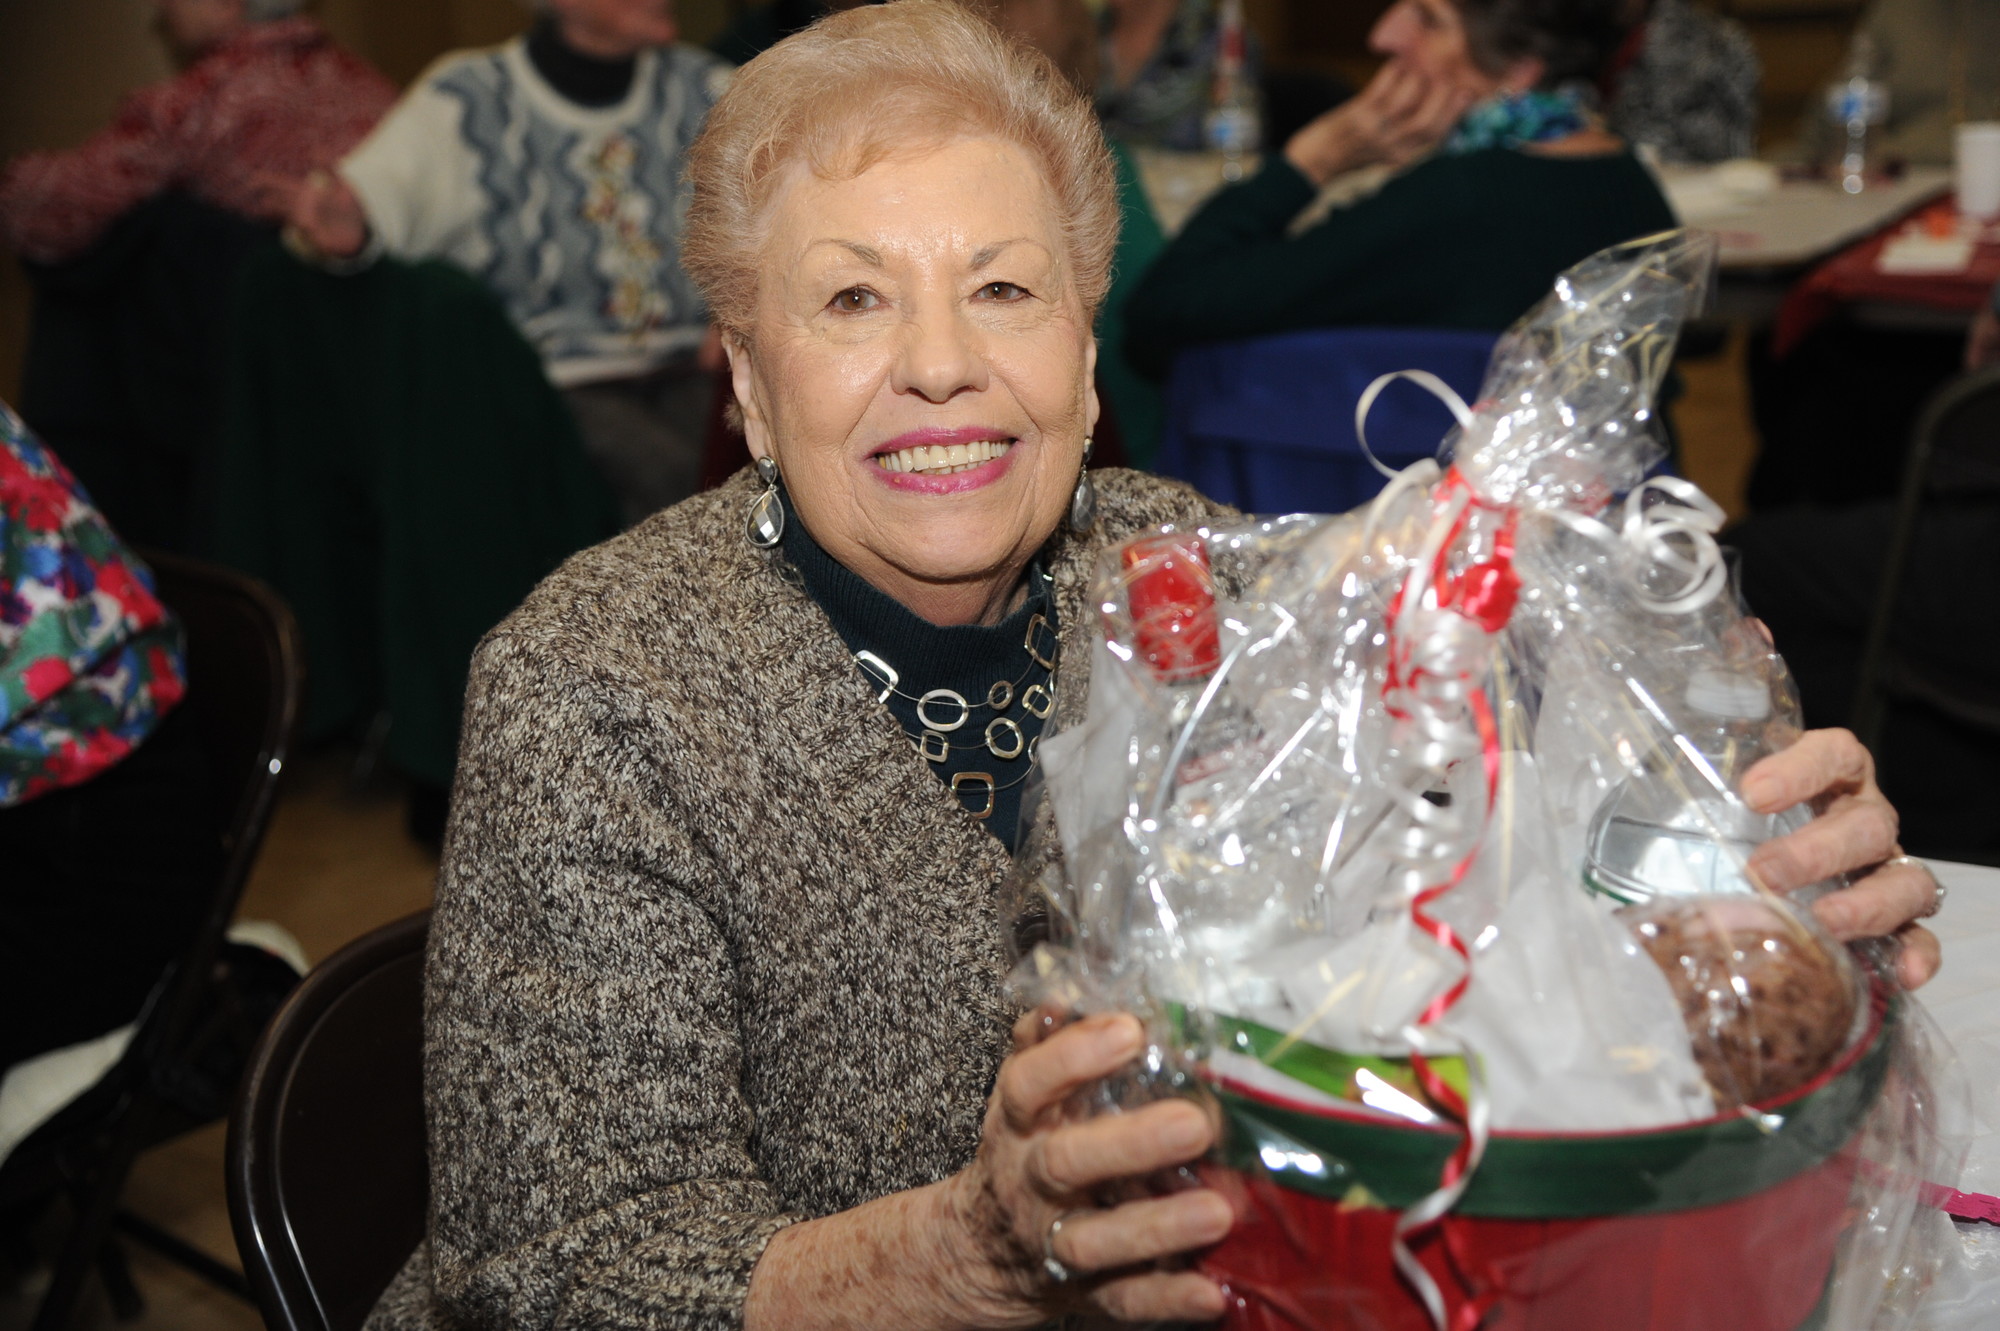 Jo Baumgartner was all smiles after winning a gift basket.